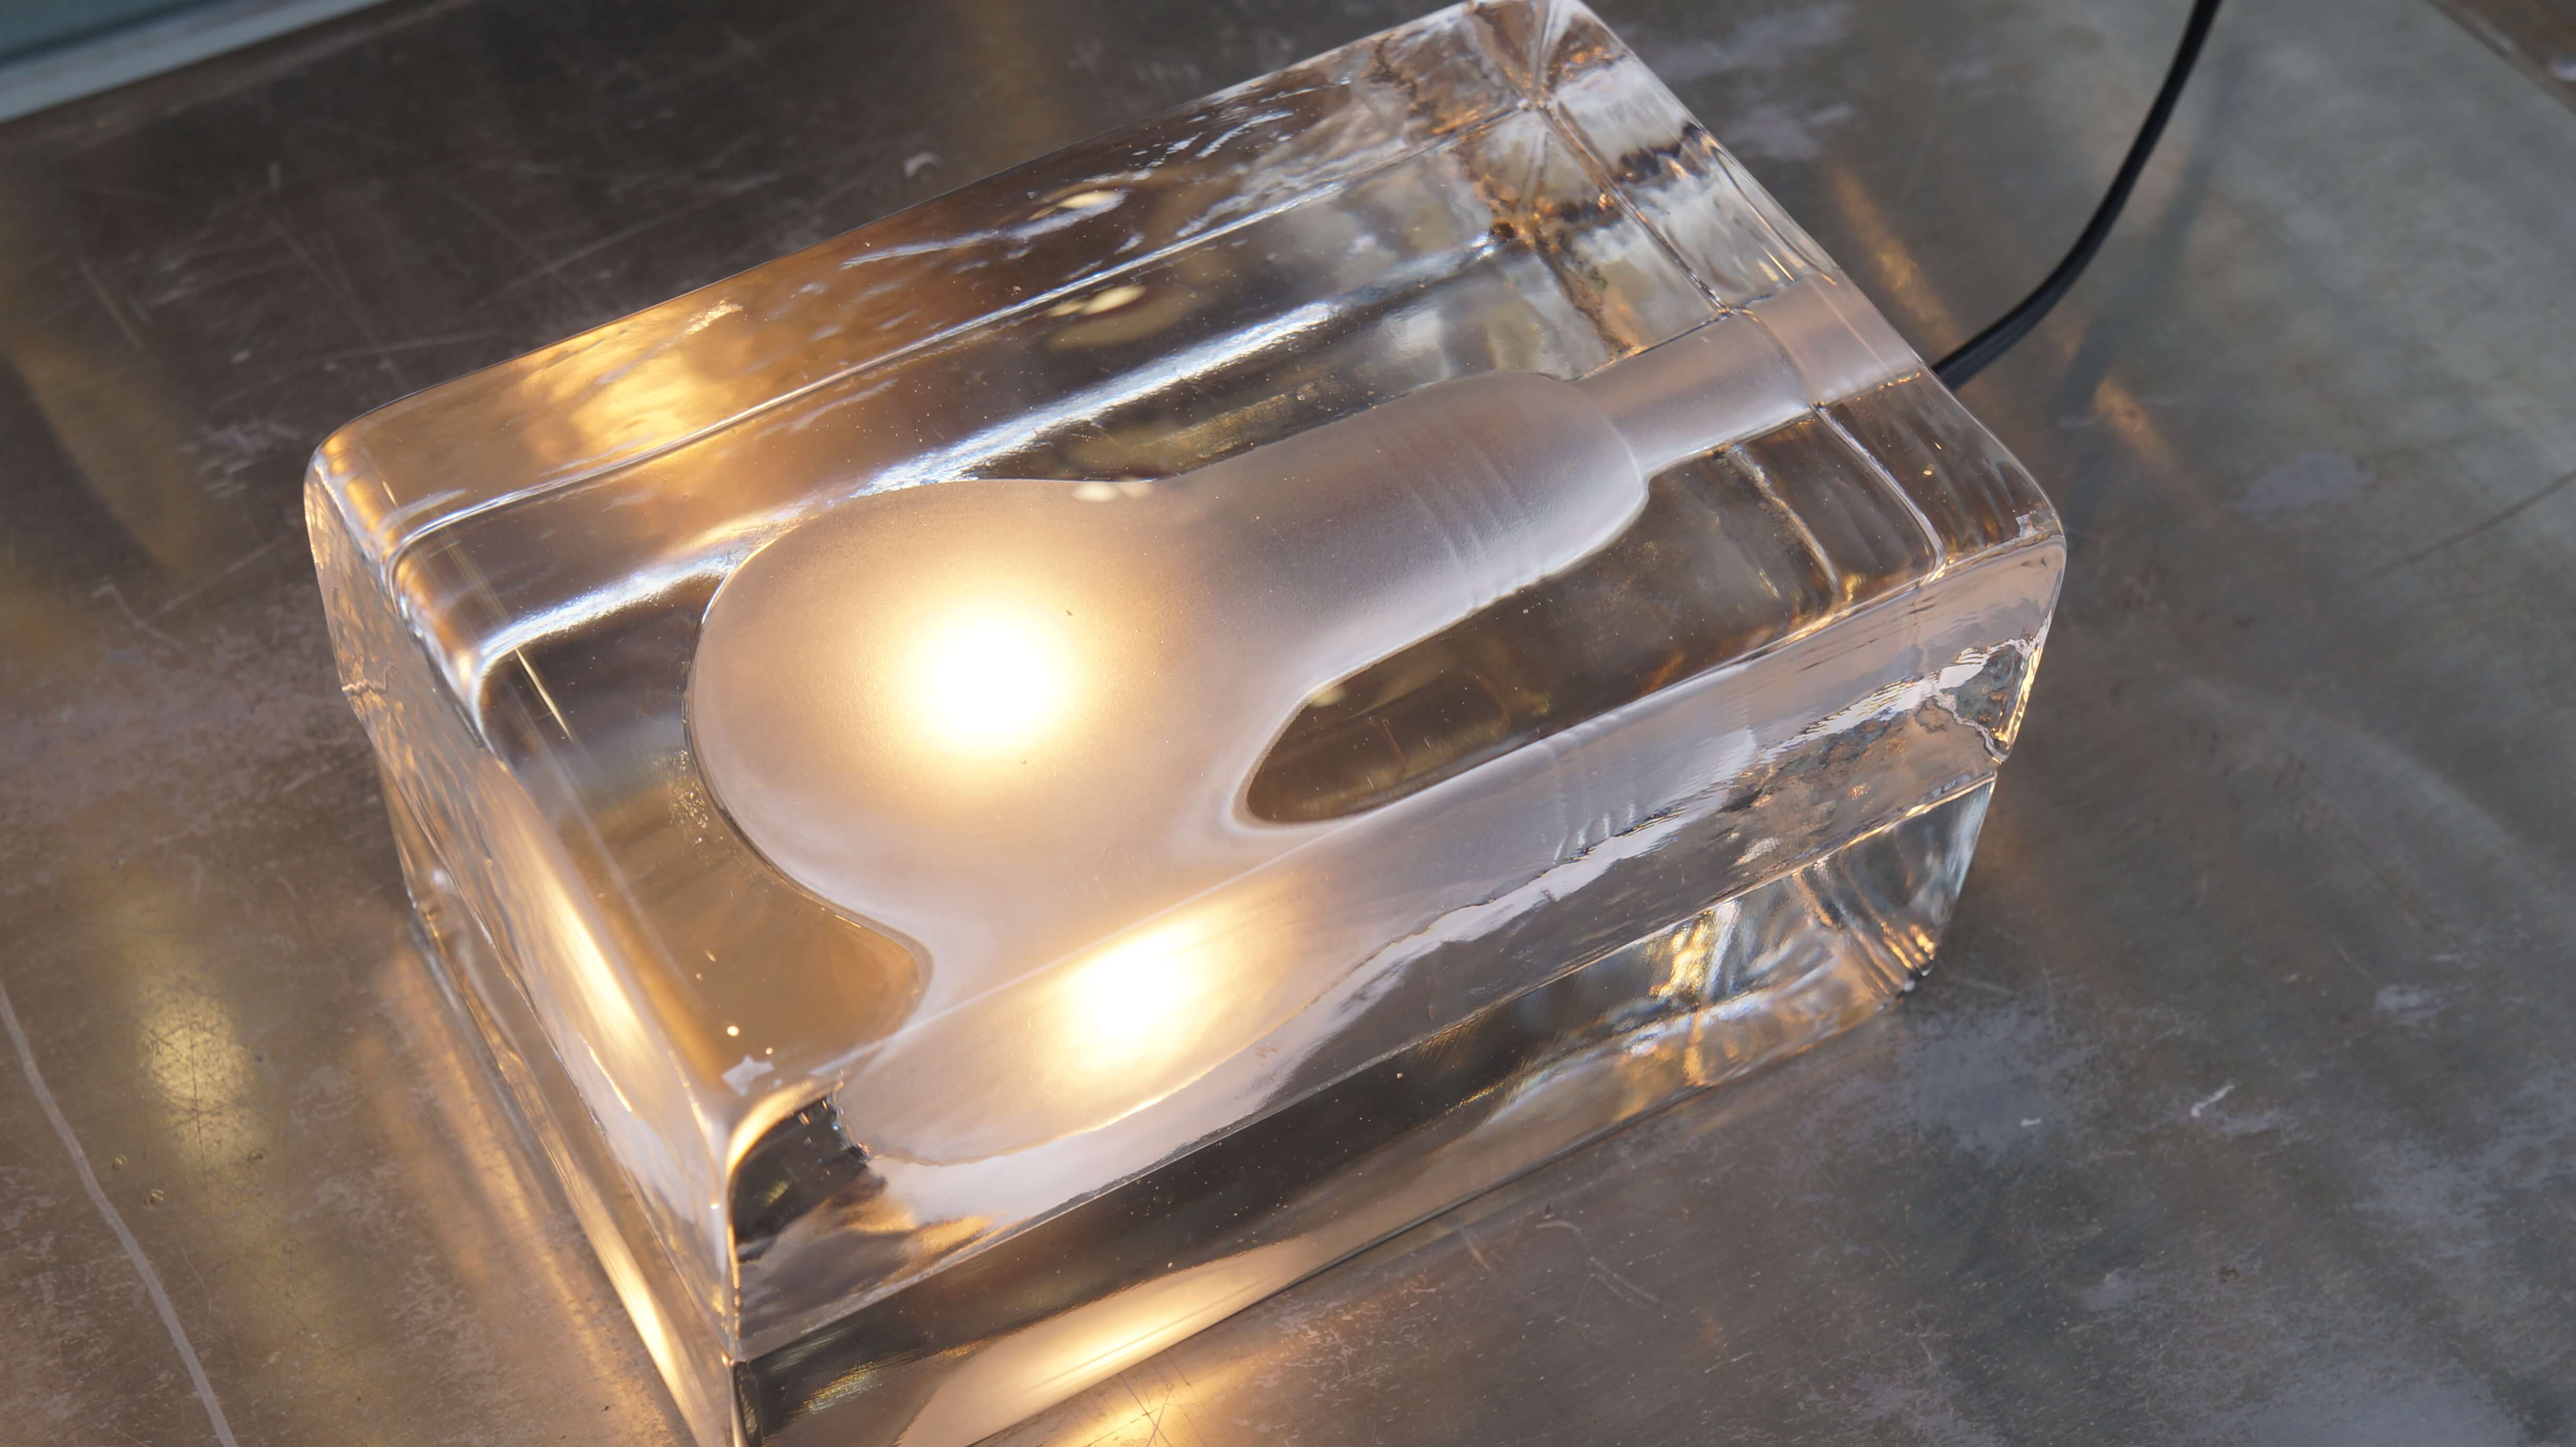 フィンランド出身のデザイナー、ハッリ・コスキネンの名を一躍有名にした、 「氷の中に電球を閉じ込める」という斬新なアイデアから生まれた「ブロックランプ」。 こちらはオリジナルサイズになります。 構造はいたってシンプル。 ガラスの内側が電球の形にくり抜かれ、くり抜かれた部分をフロスト加工で仕上げいます。 この分厚いガラスのブロックは耐久性が高く温度変化にも強い上質なガラスが使われており、 一つ一つ職人の手によって生み出されています。 氷のように冷たそうなガラスのブロックに明かりを灯すと、 あたたかな光が浮かび上がるという不思議なデザイン。 まるで氷の中で電球が凍ってしまい、その氷が今にも解け出しそうです。 幻想的でアート作品のようなこのブロックランプはMoMA(ニューヨーク近代美術館)の パーマネントコレクションにも選ばれています。 15wのとても優しい光なので、明るさは強くありませんが、 床置きできるという利点があるので、ベッドルームのフットライトや リビングの間接照明にもおすすめです。 また、明かりを灯していない時の姿もとても魅力的です。 無造作に置いてもオブジェとして成立する存在感はばっちり。 ブロックランプの幻想的で優しい明かりでお部屋をおしゃれに 演出してみてはいかがでしょうか♪ ～【東京都杉並区阿佐ヶ谷北アンティークショップ 古一/ZACK高円寺店】　古一/ふるいちでは出張無料買取も行っております。杉並区周辺はもちろん、世田谷区・目黒区・武蔵野市・新宿区等の東京近郊のお見積もりも！ビンテージ家具・インテリア雑貨・ランプ・USED品・ リサイクルなら古一/フルイチへ～